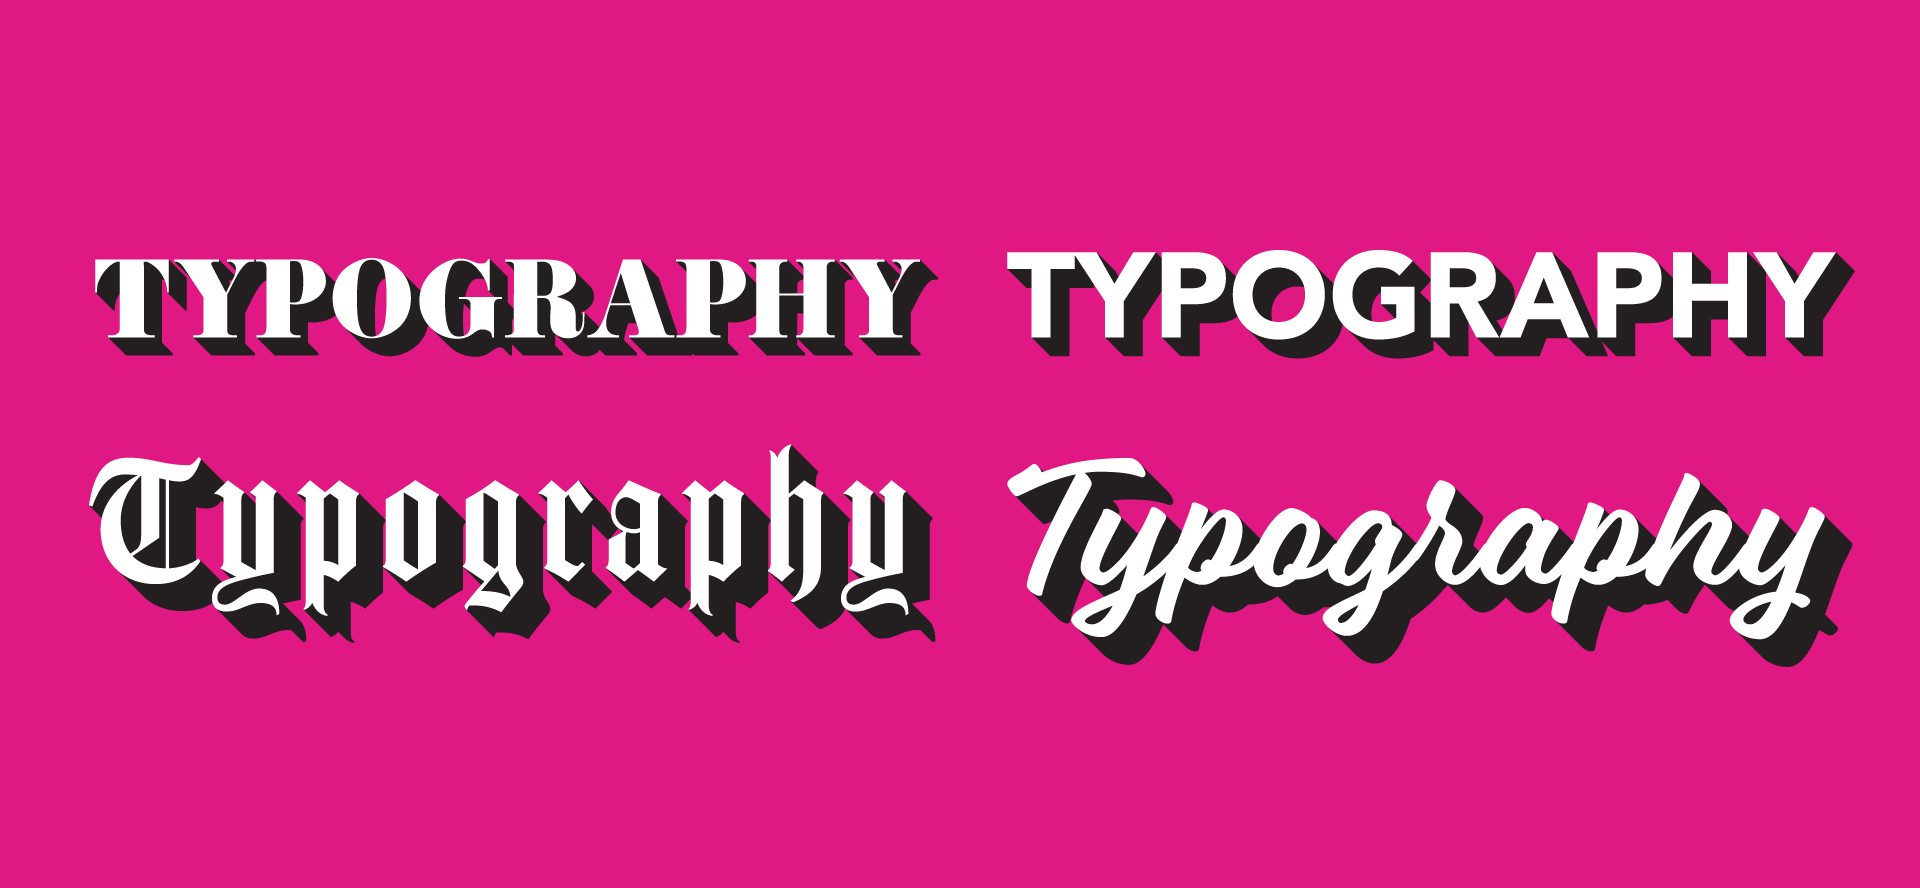 200419_SavvyBlog_TypographyBasics_Header_RFU